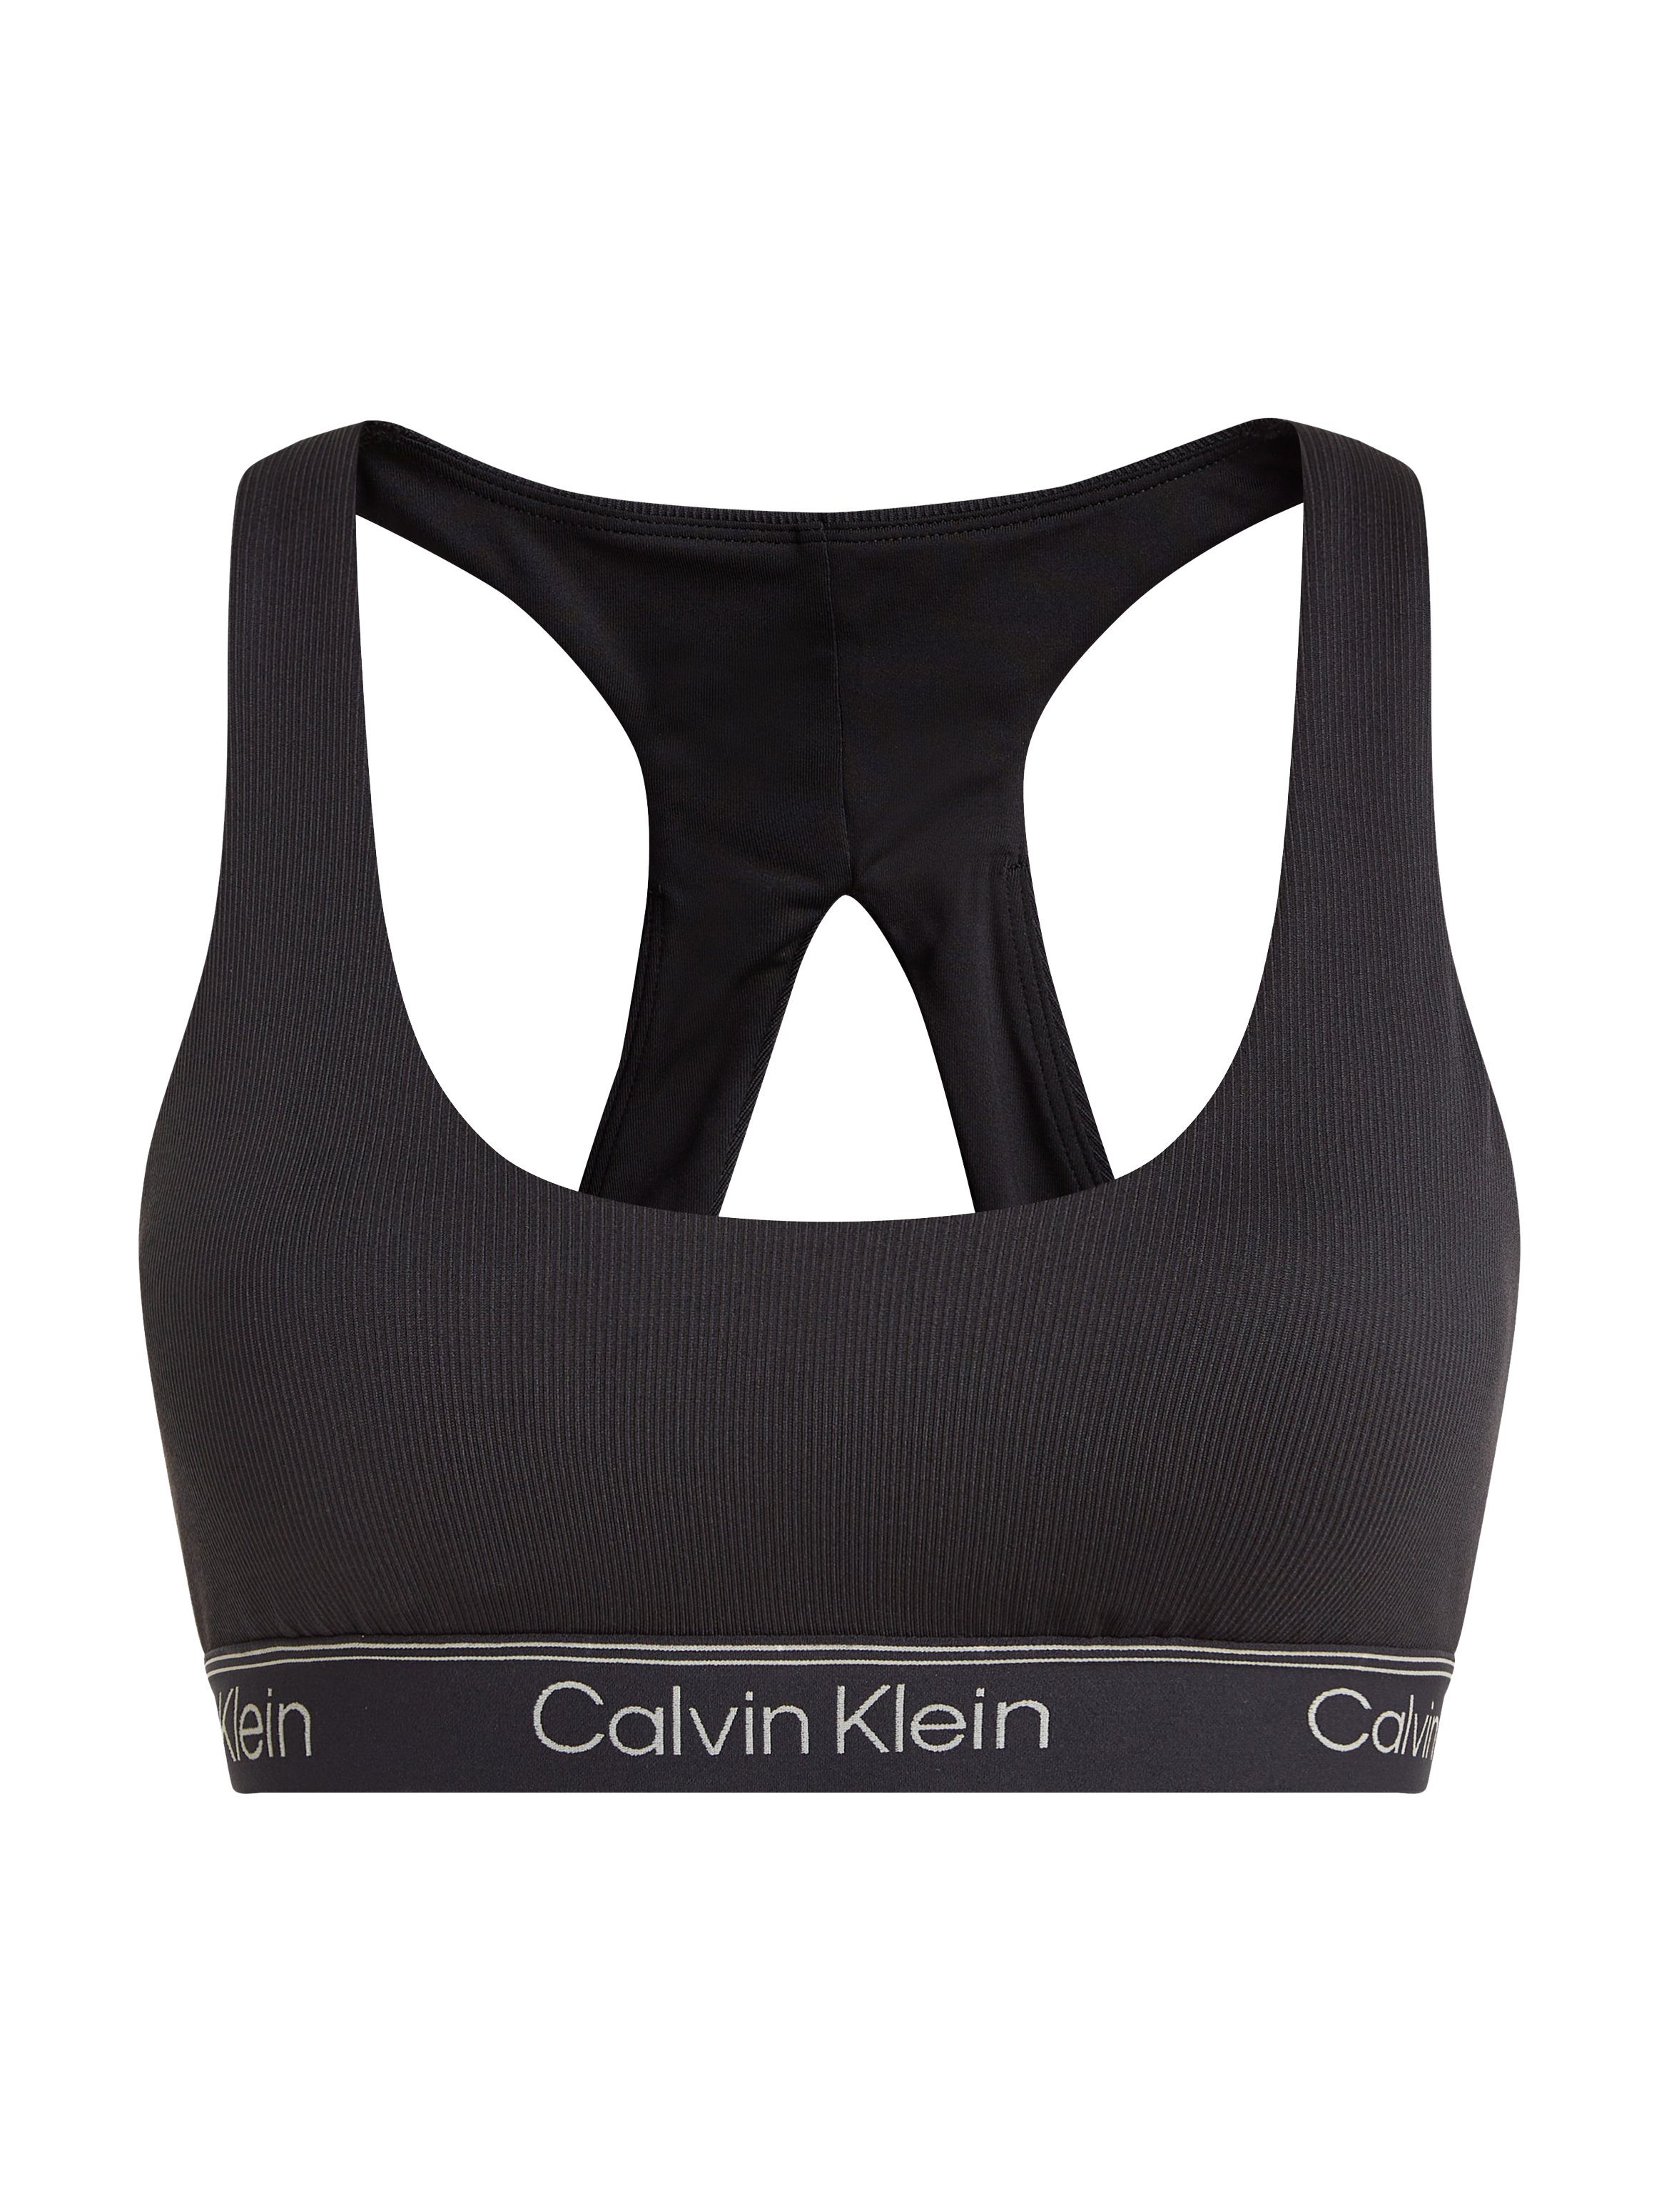 Calvin Klein Sport Sport-Bustier schwarz elastischem Bund mit